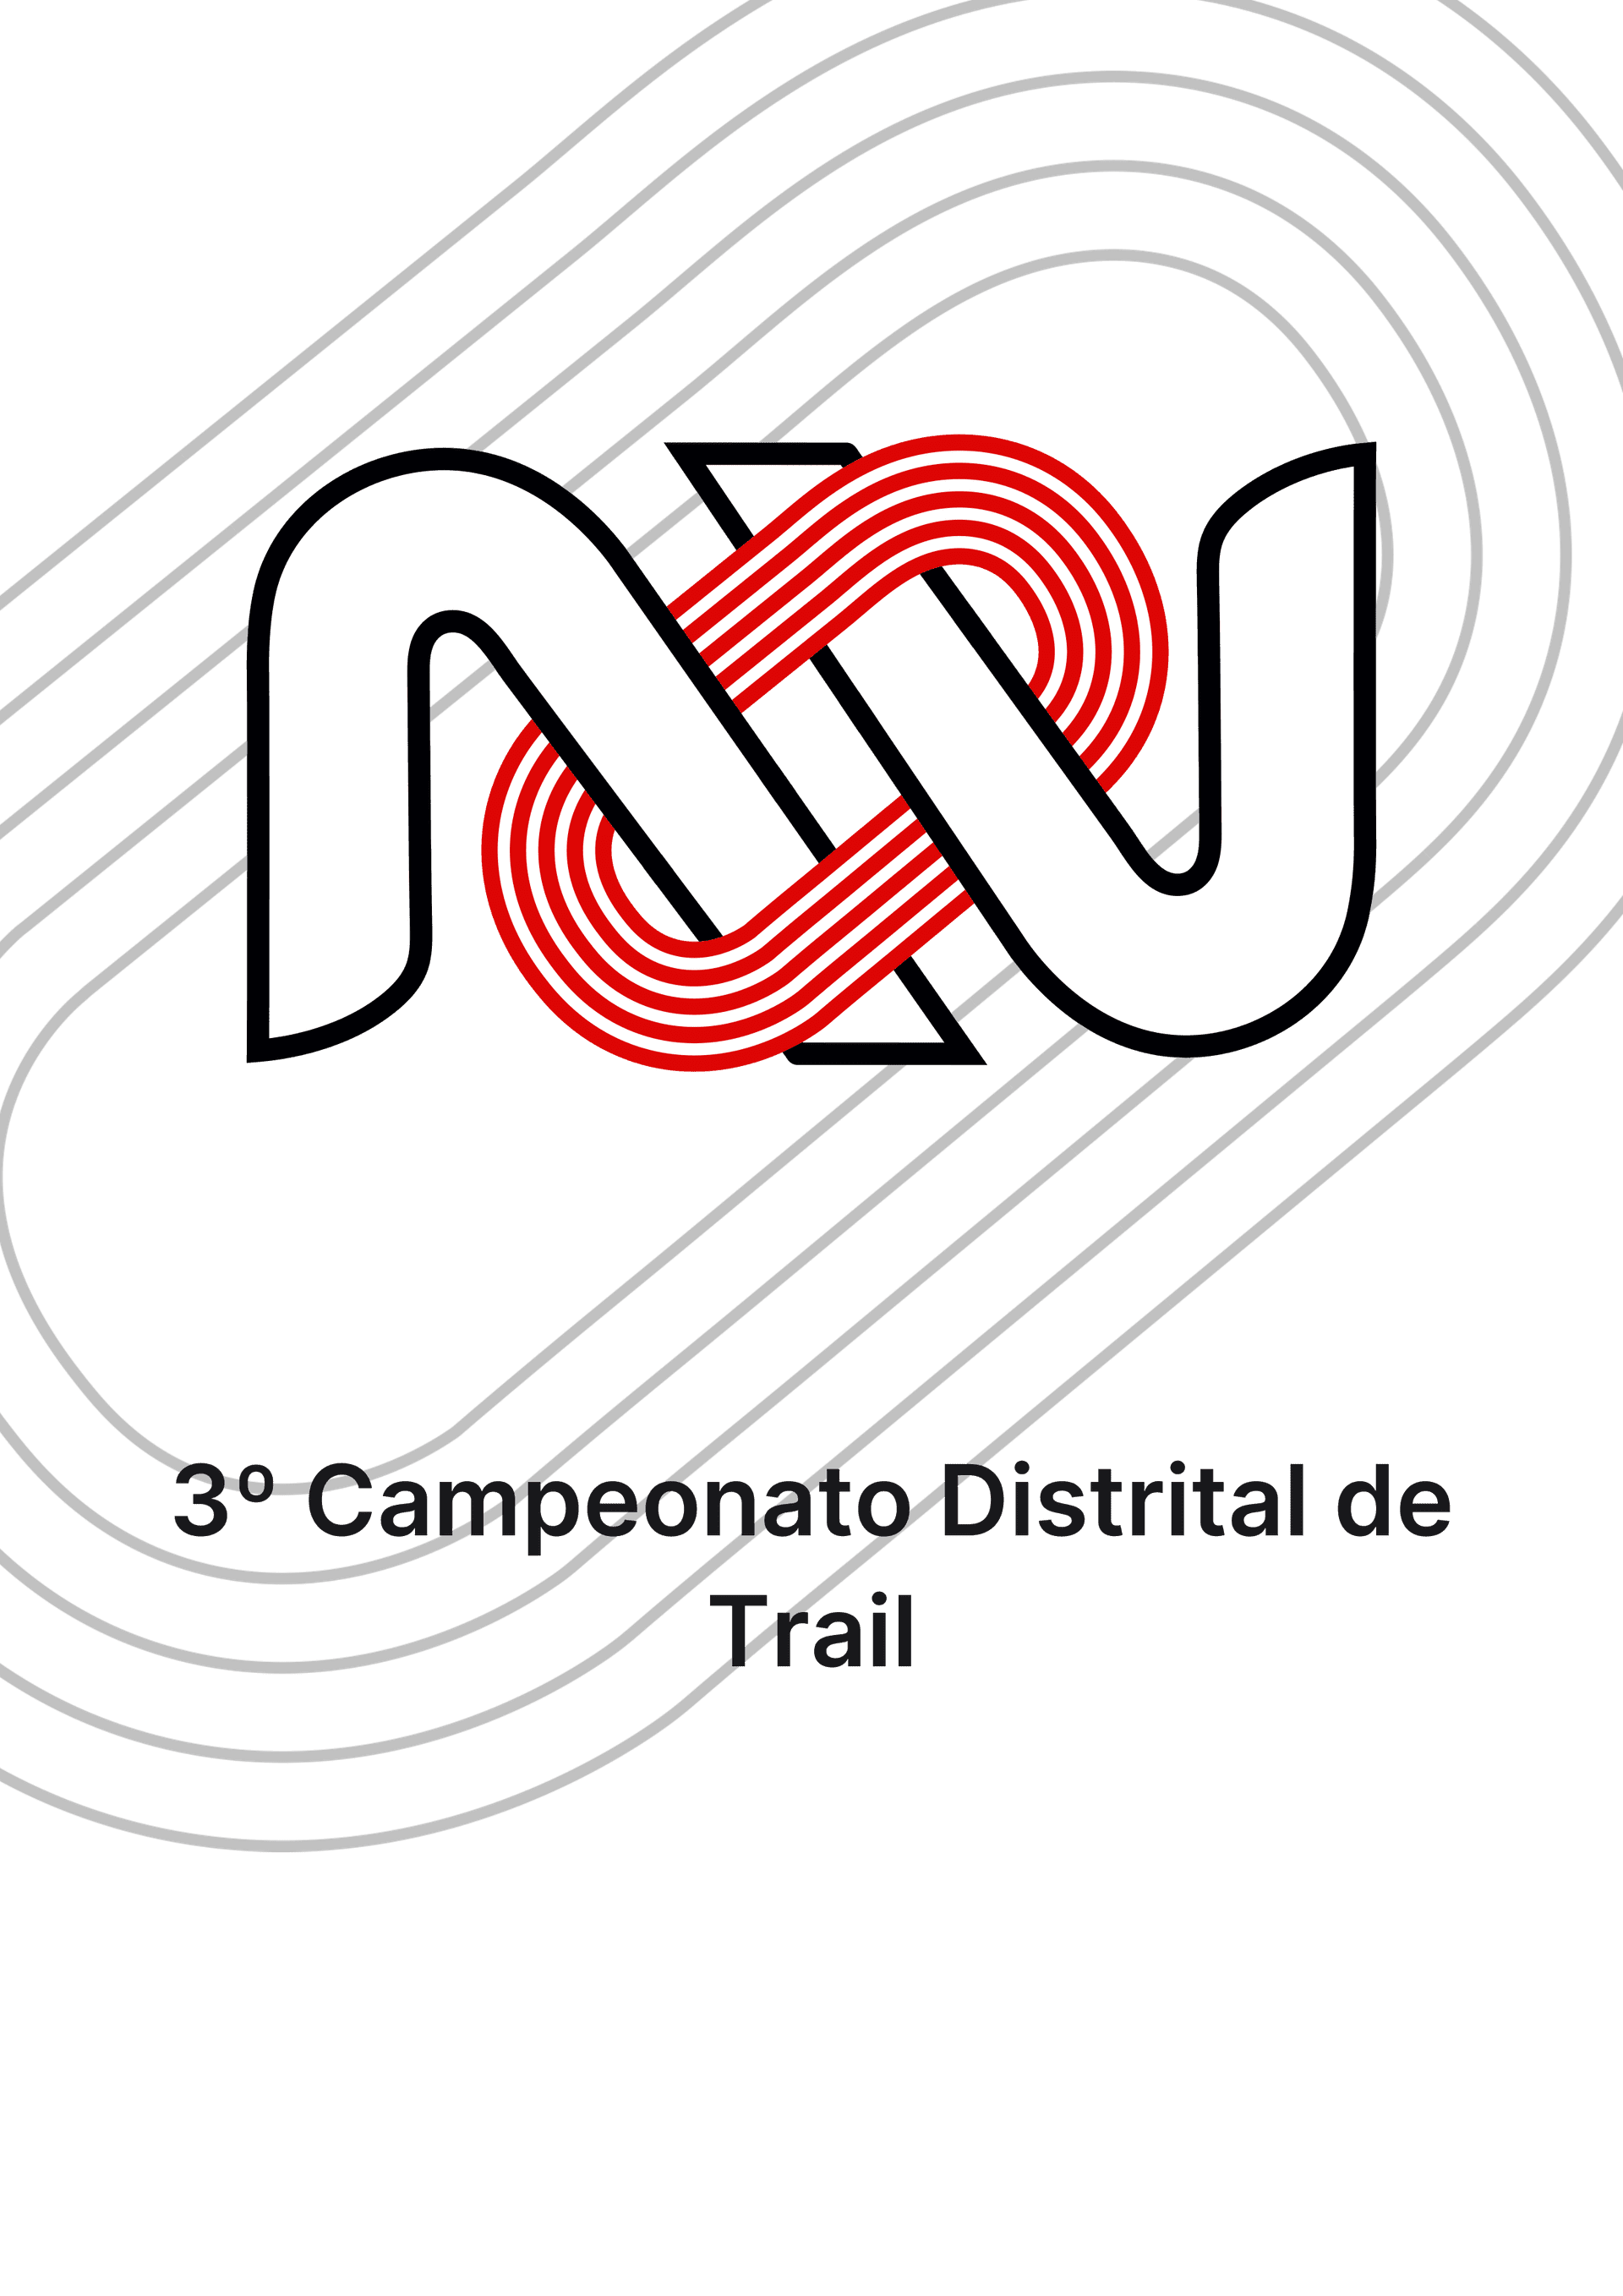 3º Campeonato Distrital de Trail